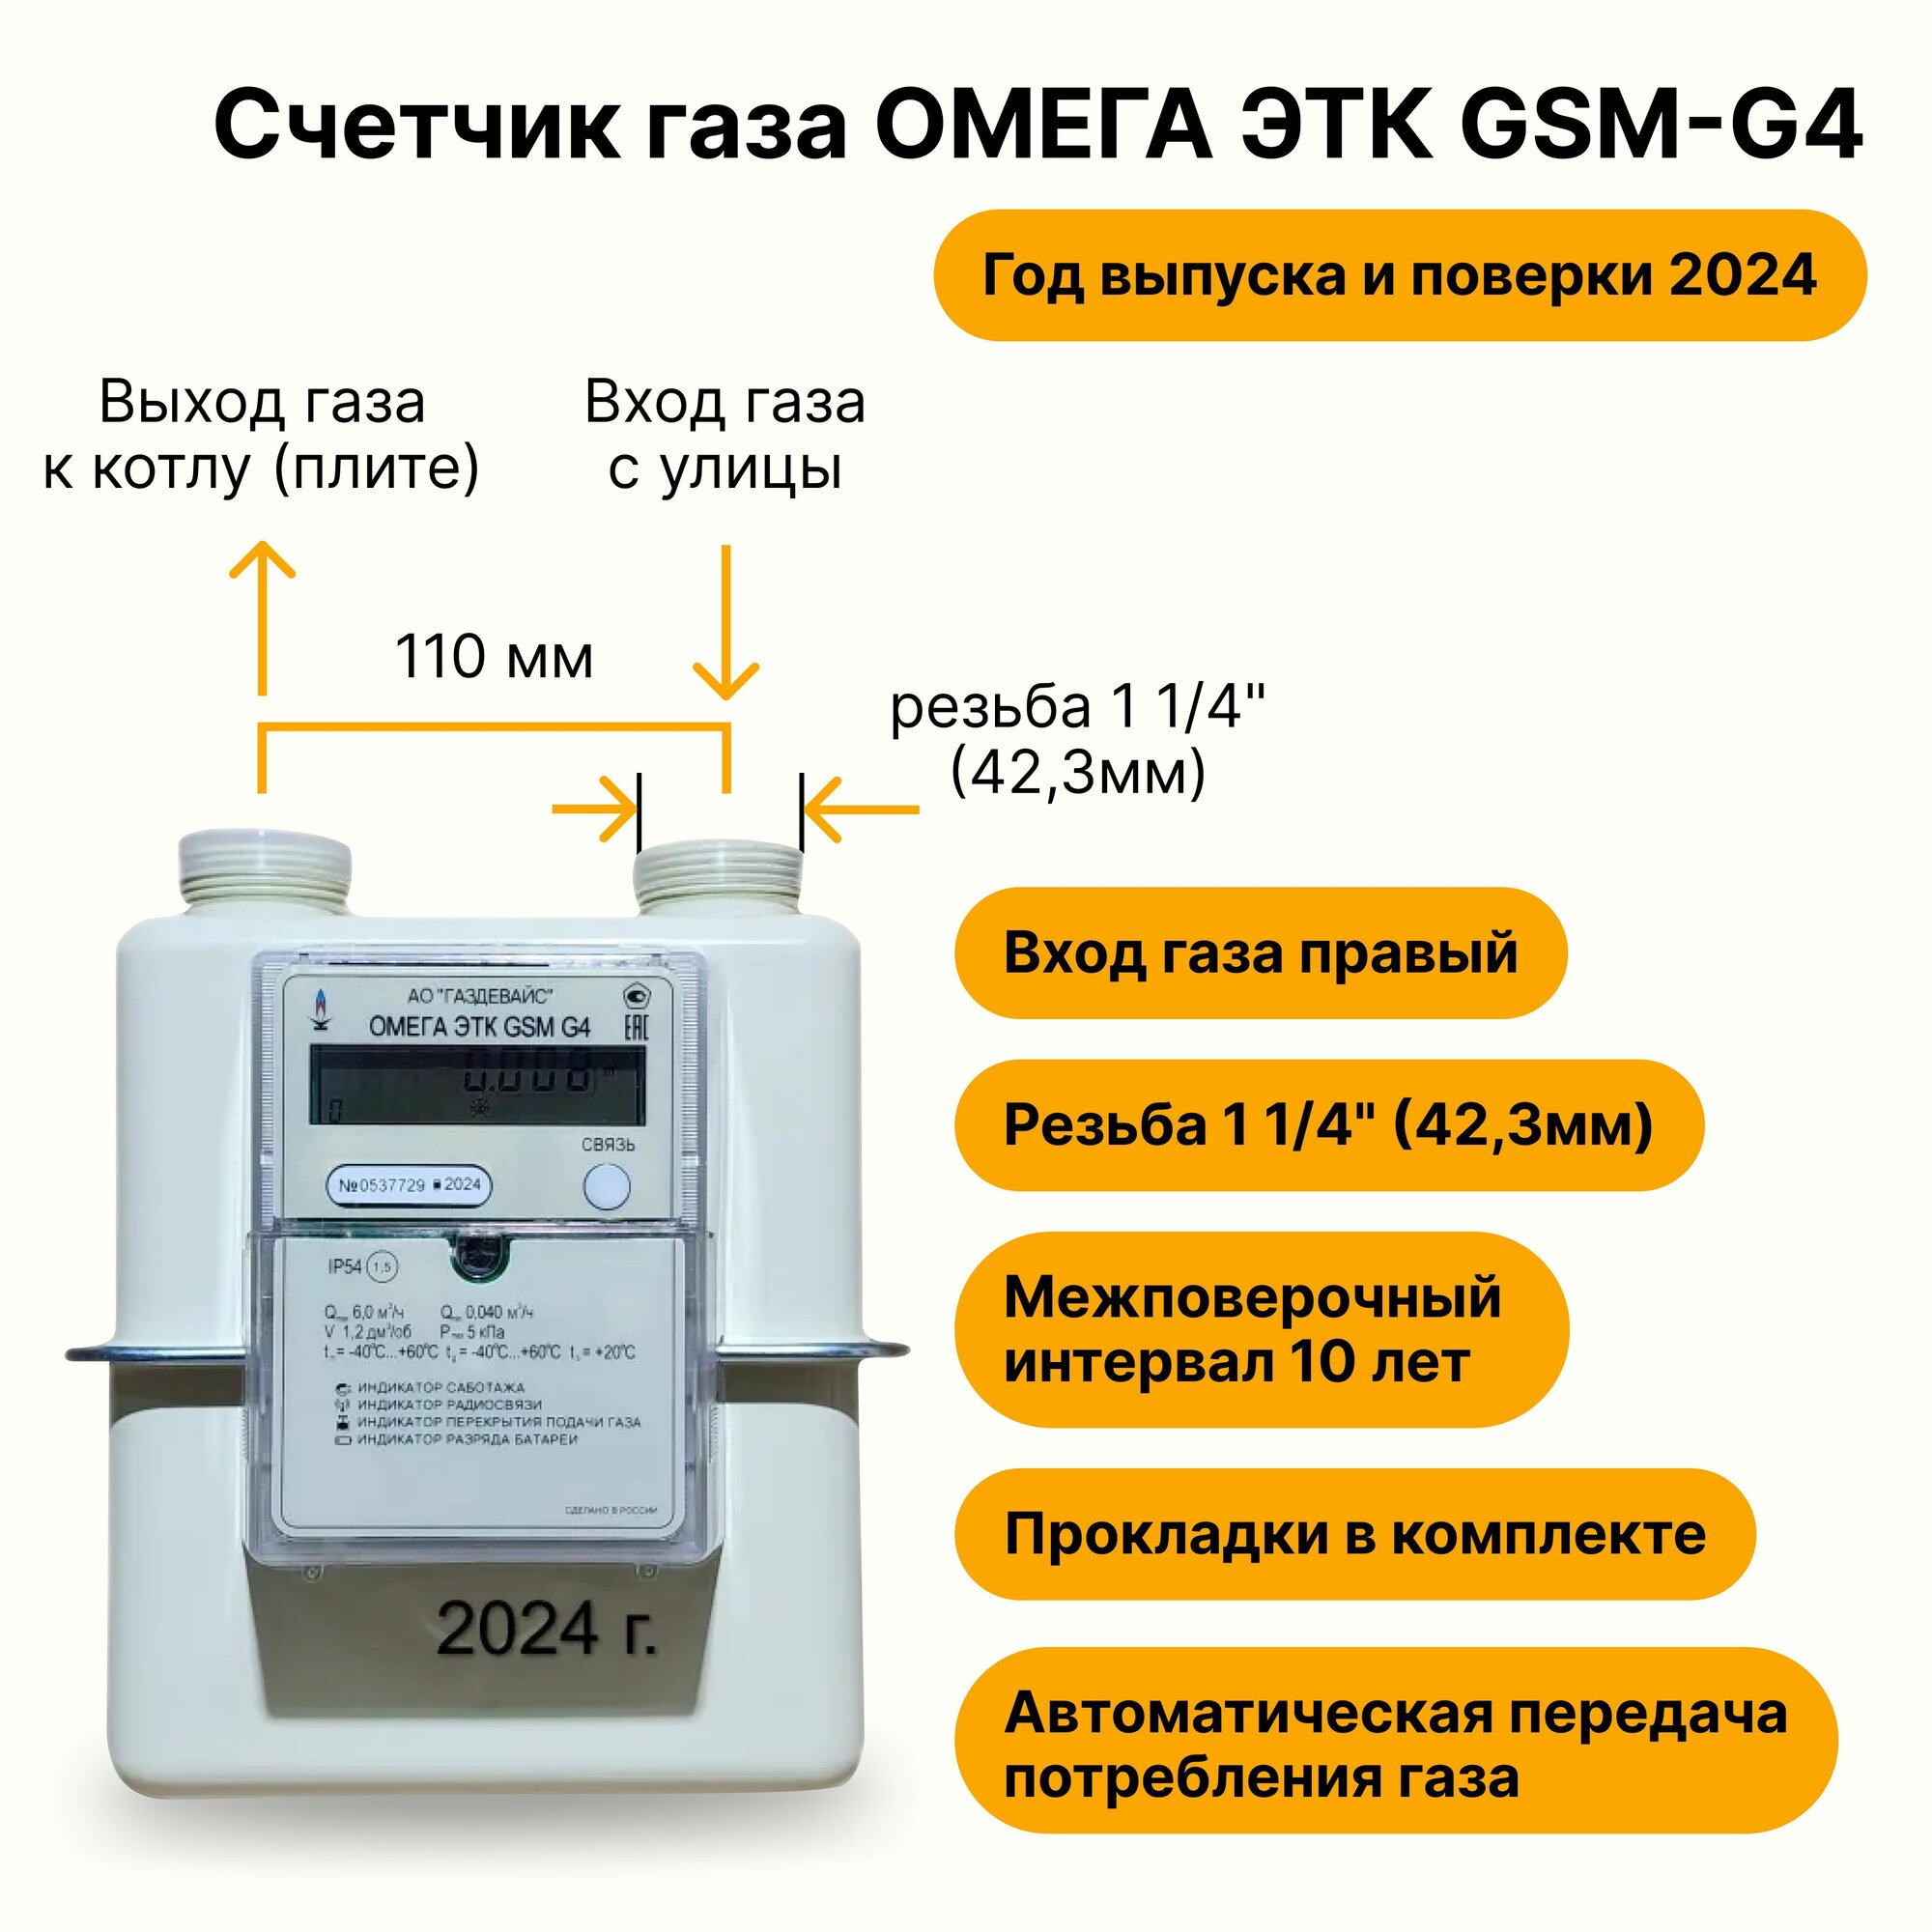 Омега ЭТК GSM G4 Газдевайс (вход газа правый, 110мм, резьба 1 1/4", прокладки В комплекте) 2024 год выпуска с термокорректором